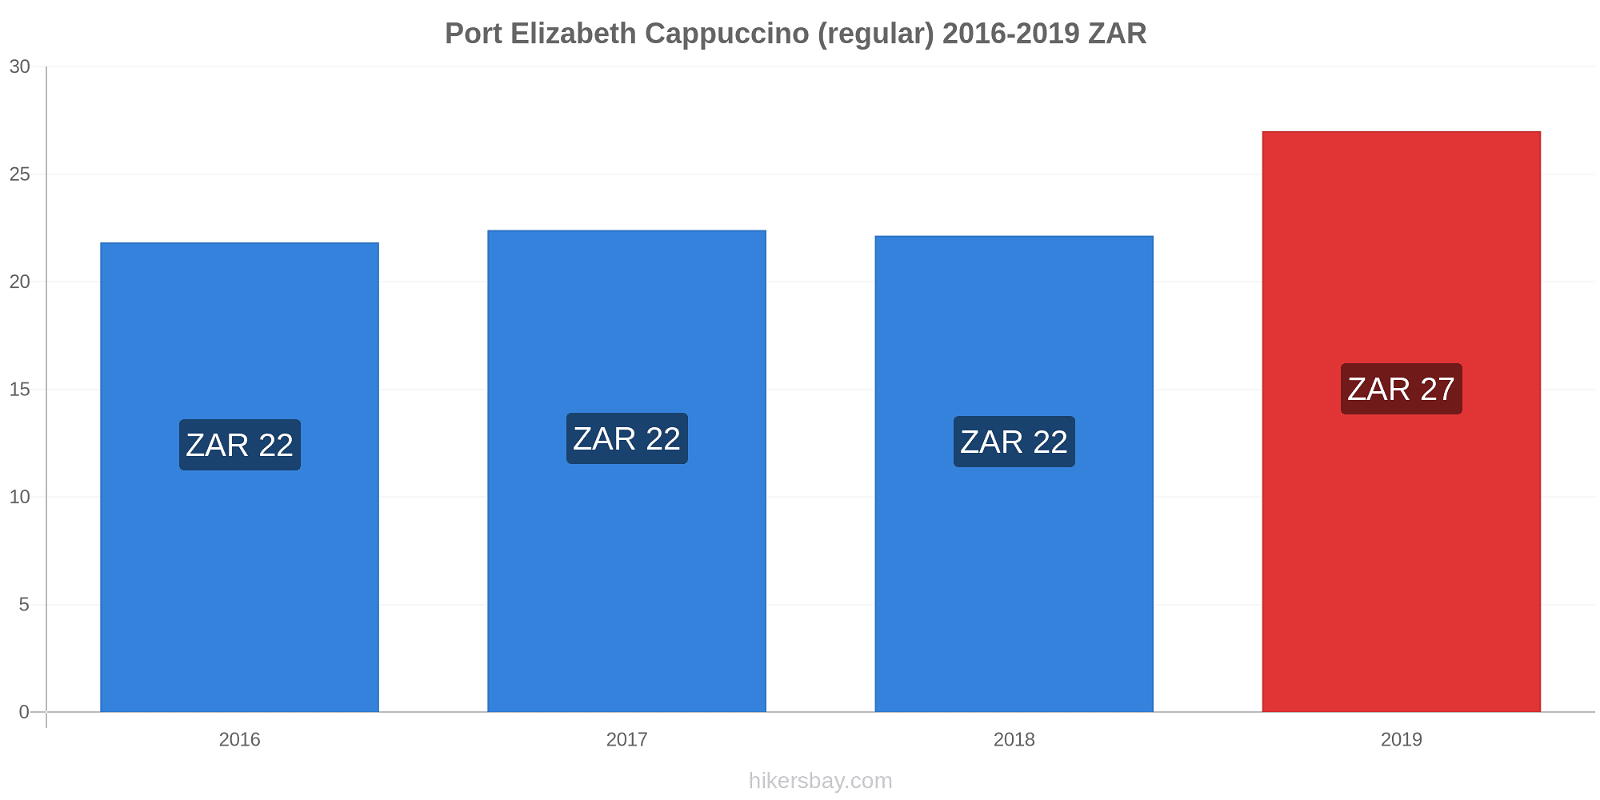 Port Elizabeth price changes Cappuccino (regular) hikersbay.com